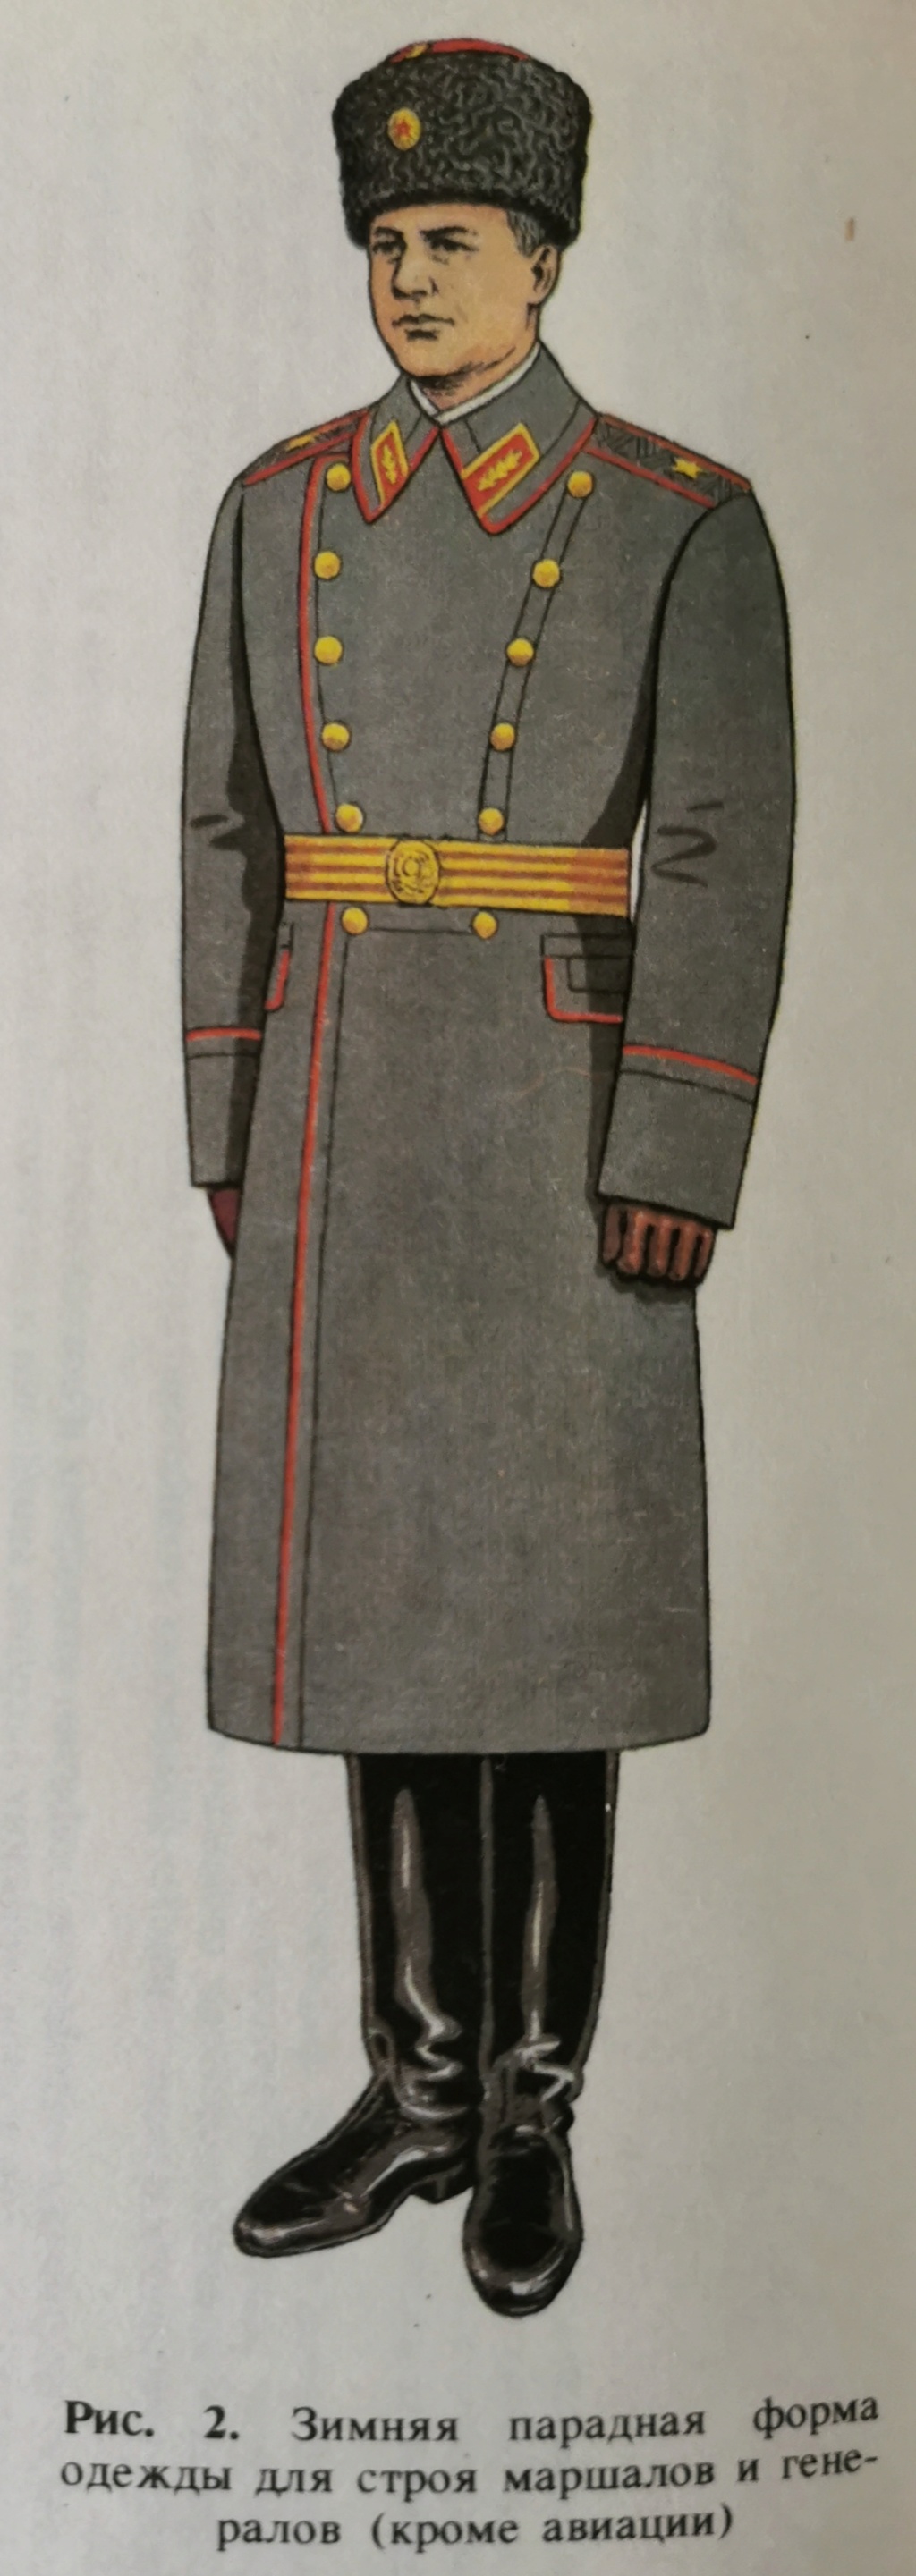 Details de mes coiffures de Général soviétique.  - Page 2 Img_2303